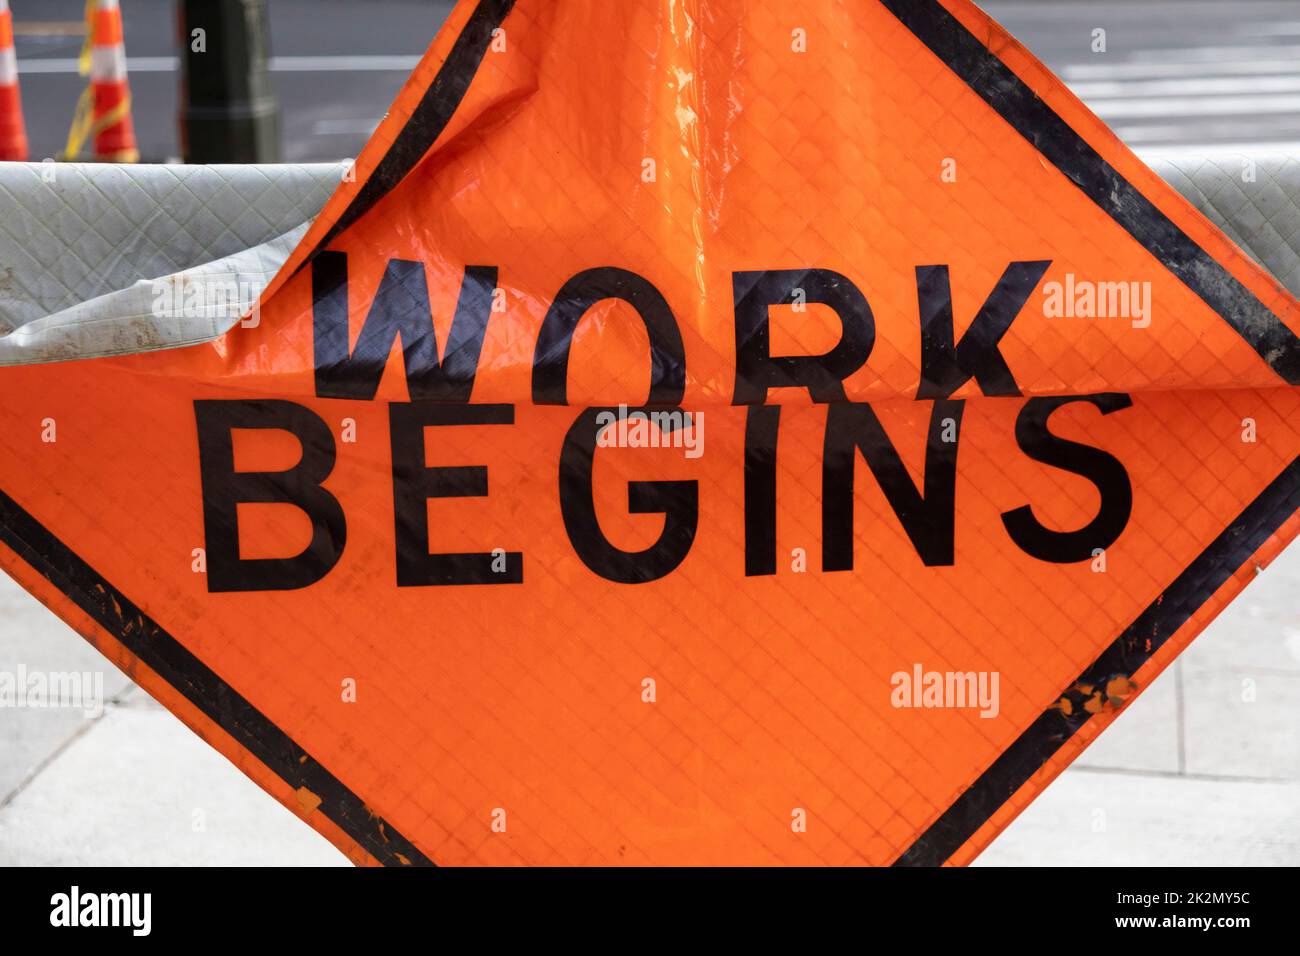 Detroit, MICHIGAN - Un letrero de consternación advierte que 'el trabajo comienza'. Foto de stock